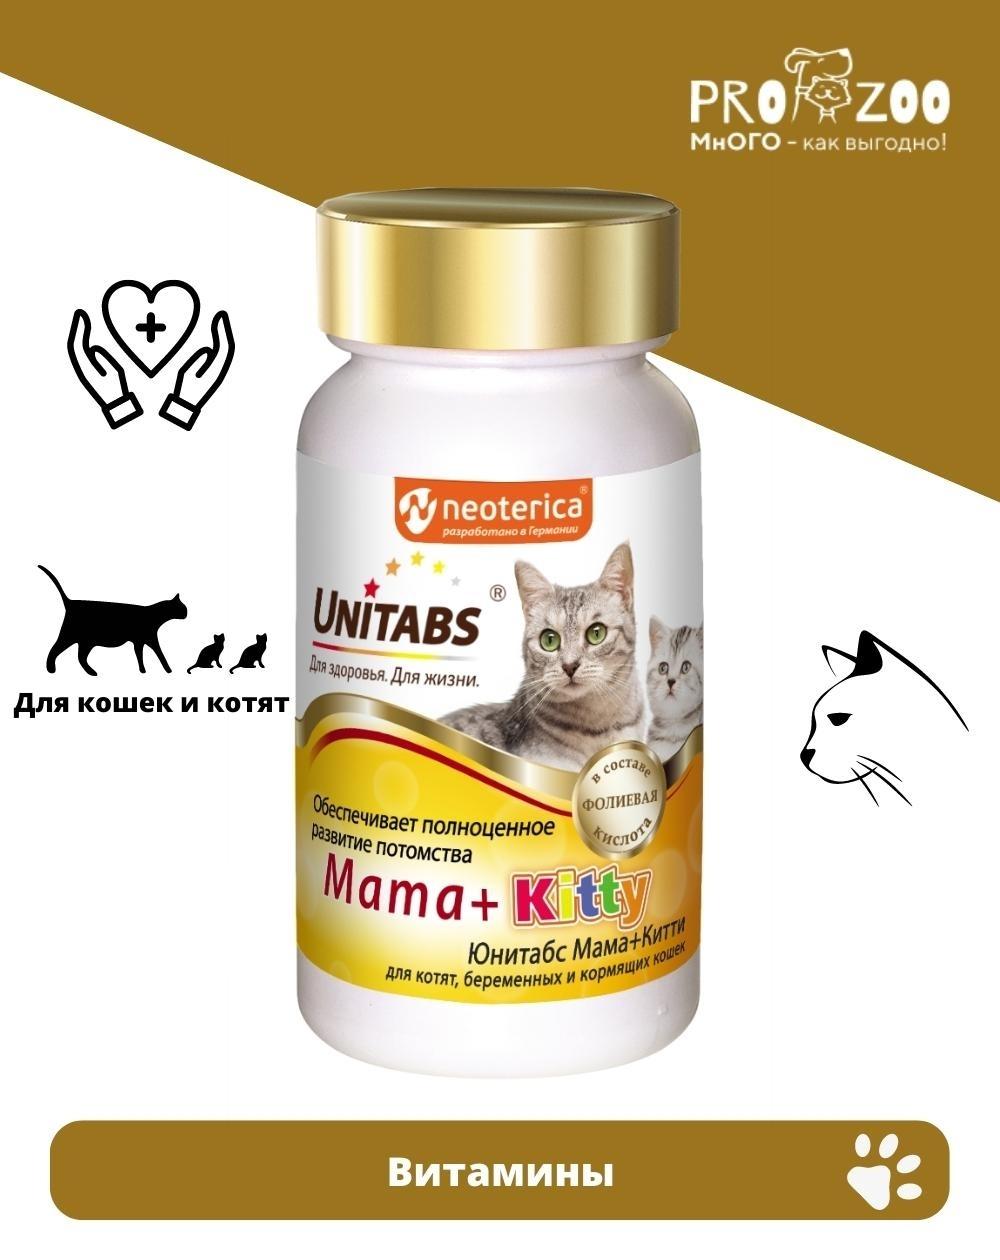 Витамины Unitabs Mama+Kitty для котят, беременных и кормящих кошек, 120 шт  купить в Минске, цена с доставкой